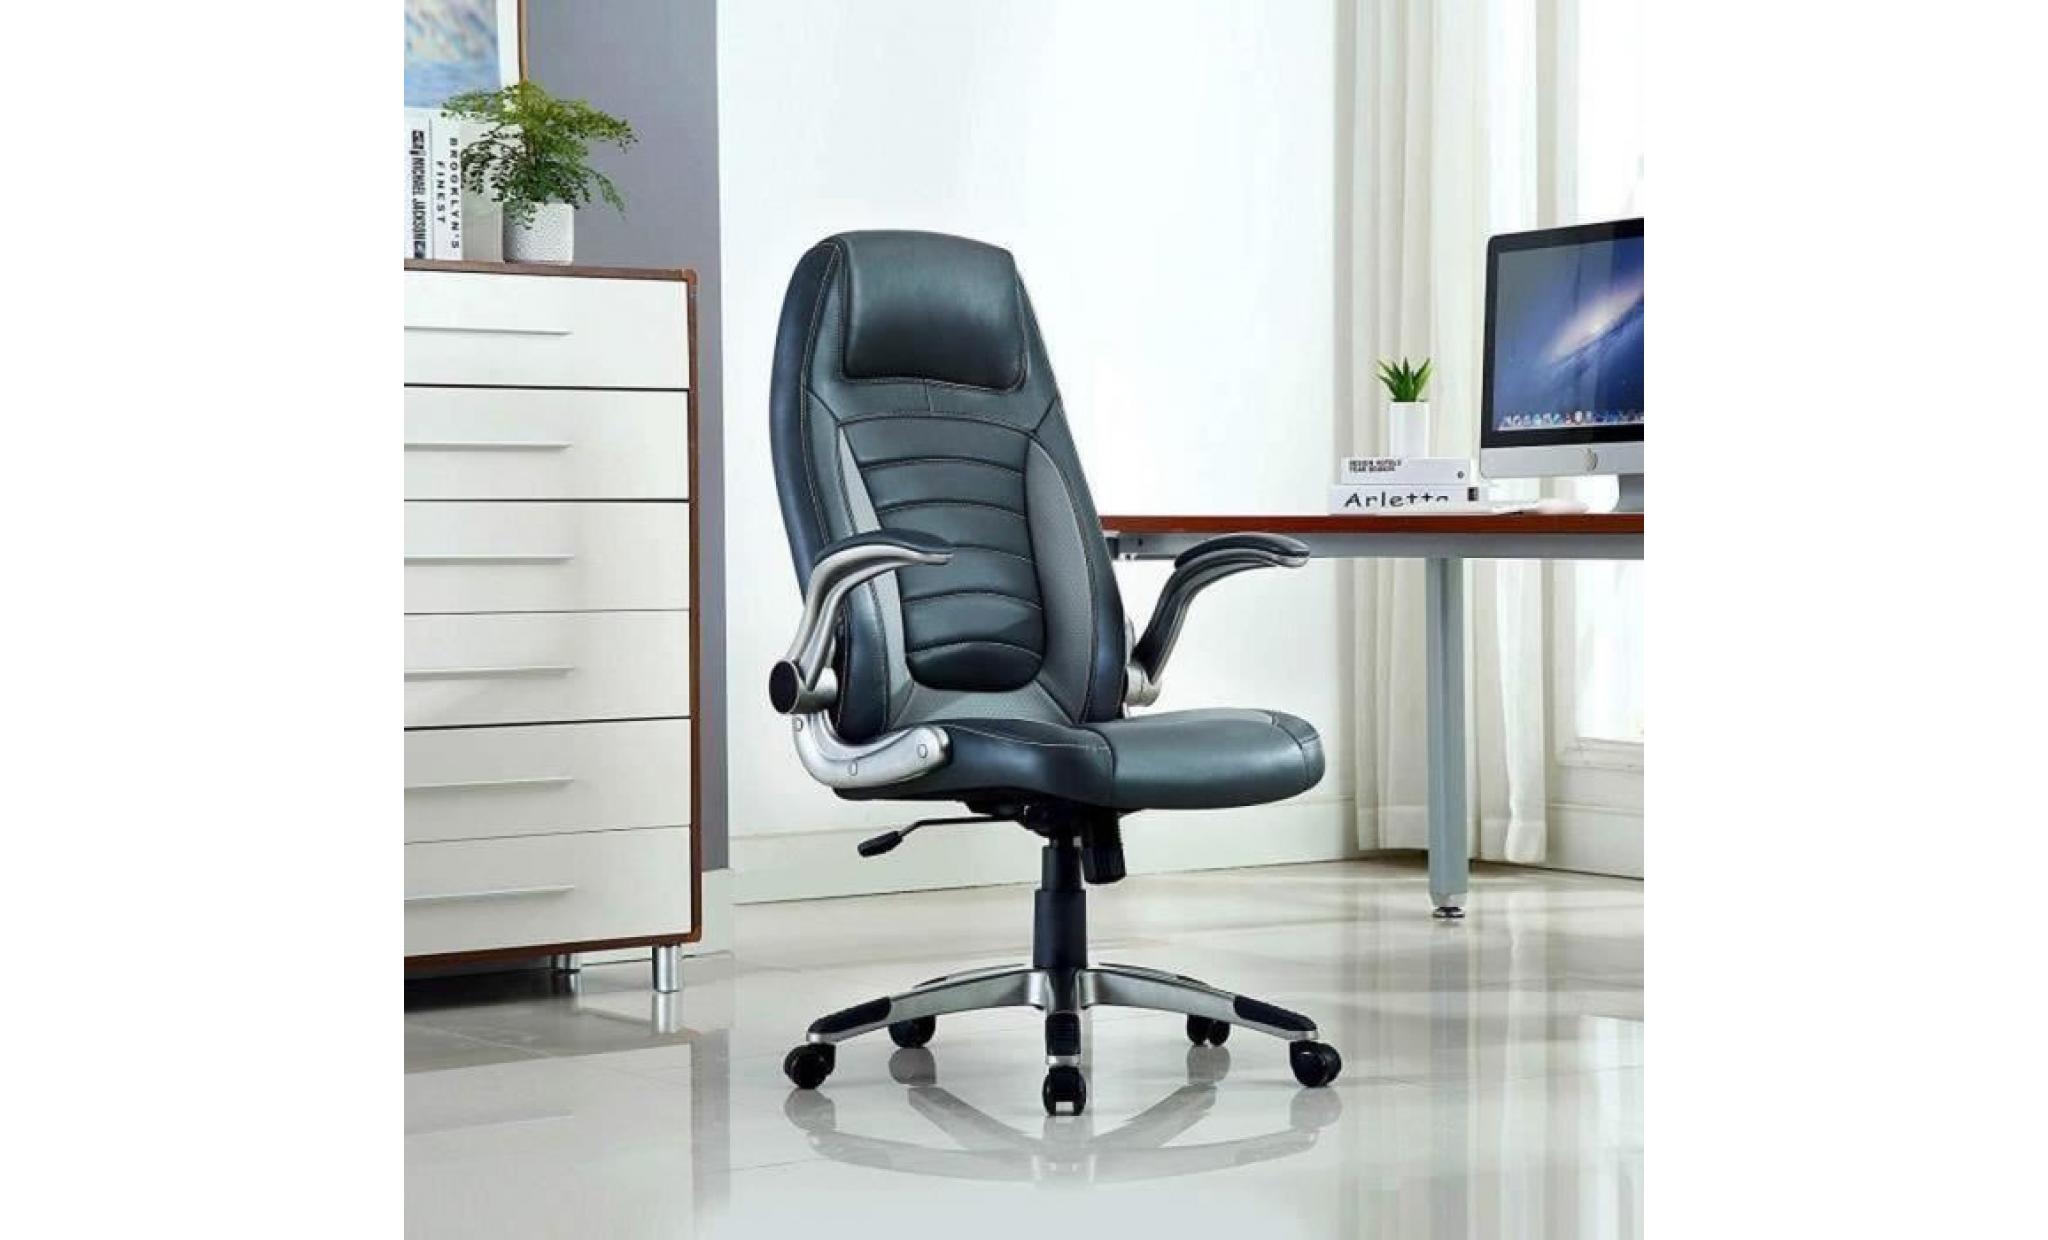 chaise de bureau   fauteuil gamer   siège pu hauteur réglable   chaise d'ordinateur   gris foncé    intimate wm heart